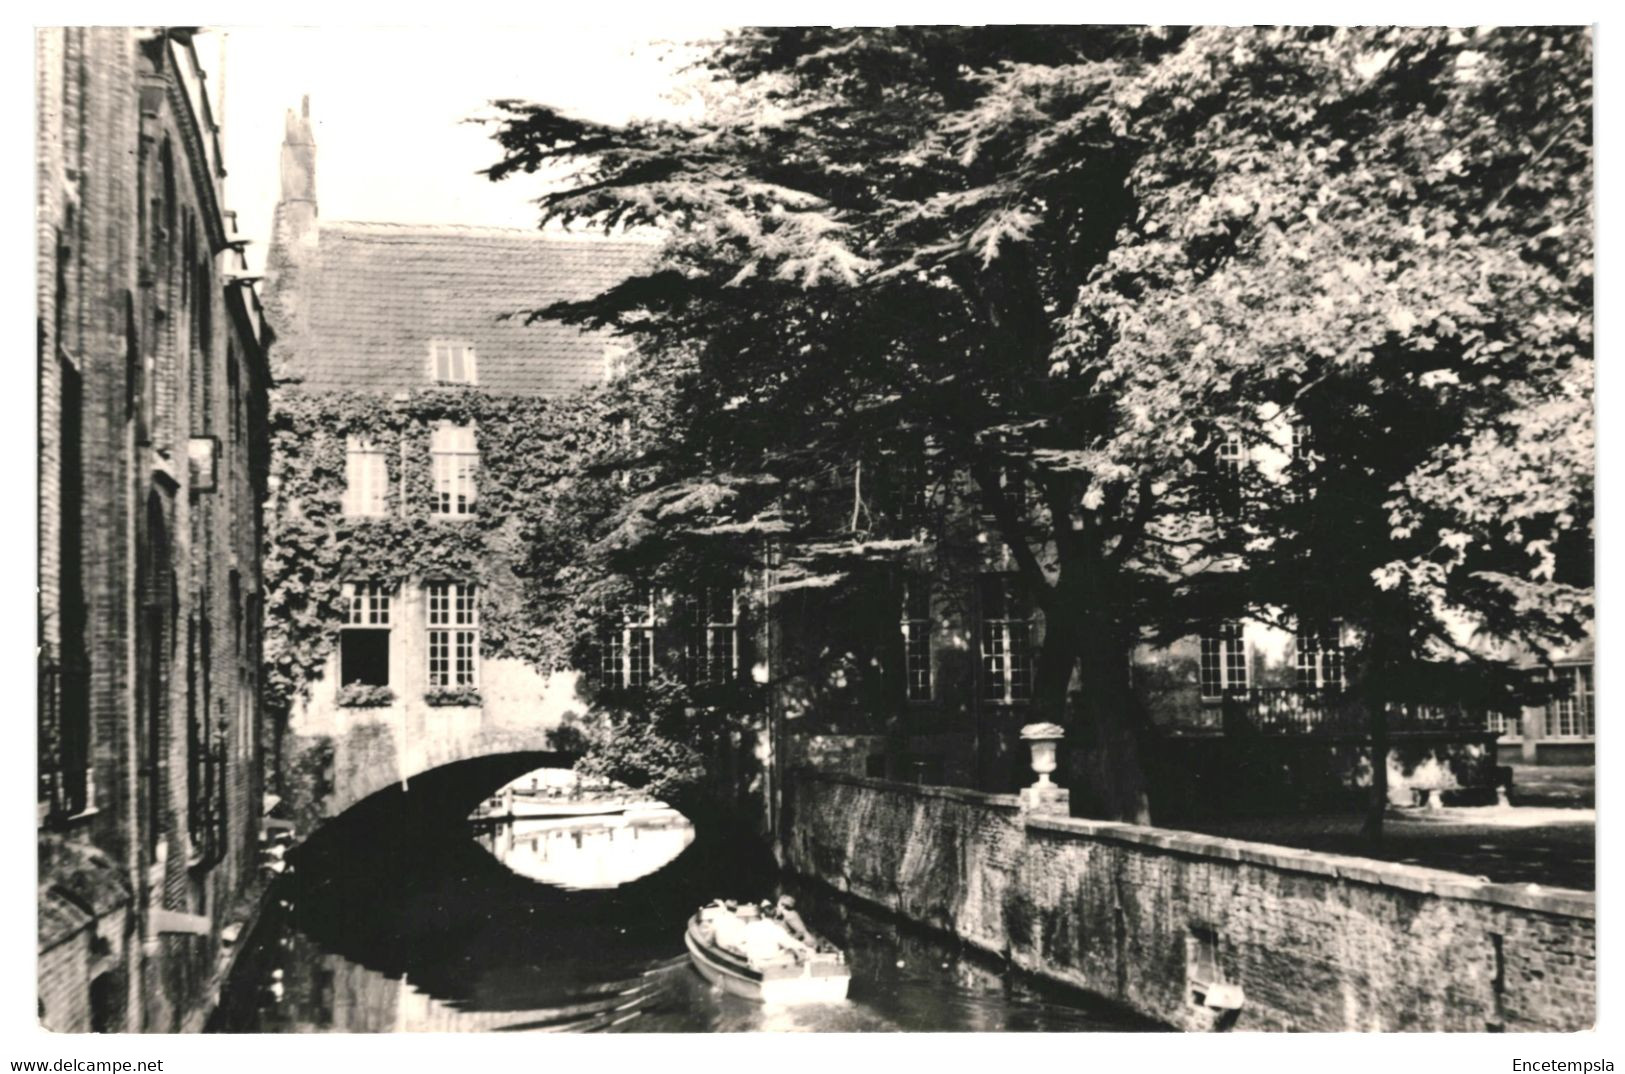 CPA - Carte postale - Lot de 20  cartes postales de Belgique Bruges - VMBELBRUGES-1